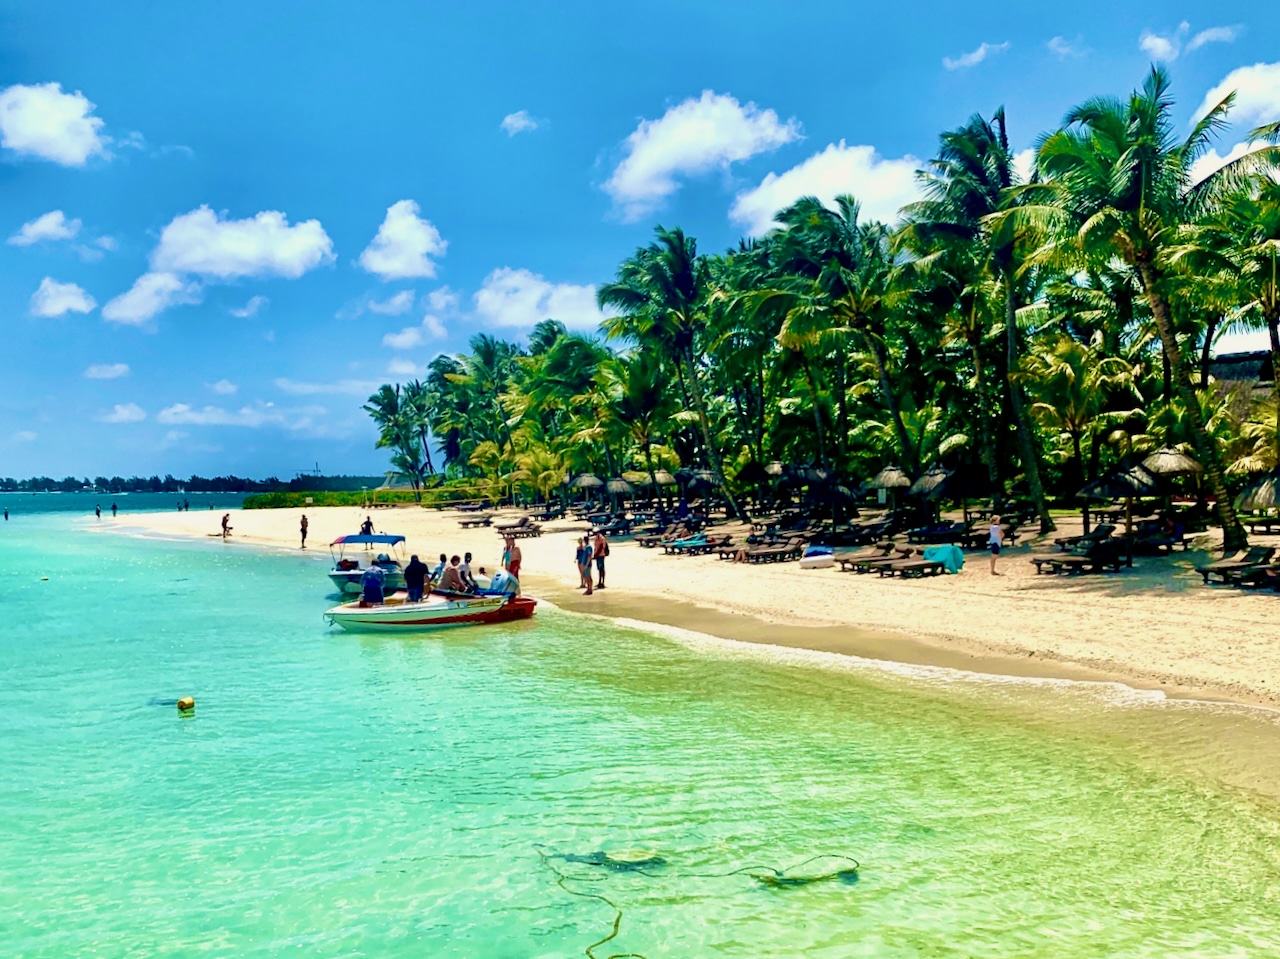 Am Strand ist es auf Mauritius am schönsten – und die gute Nachricht ist: Die zauberhaften Strände befinden sich rund um die Insel. Foto: Sascha Tegtmeyer